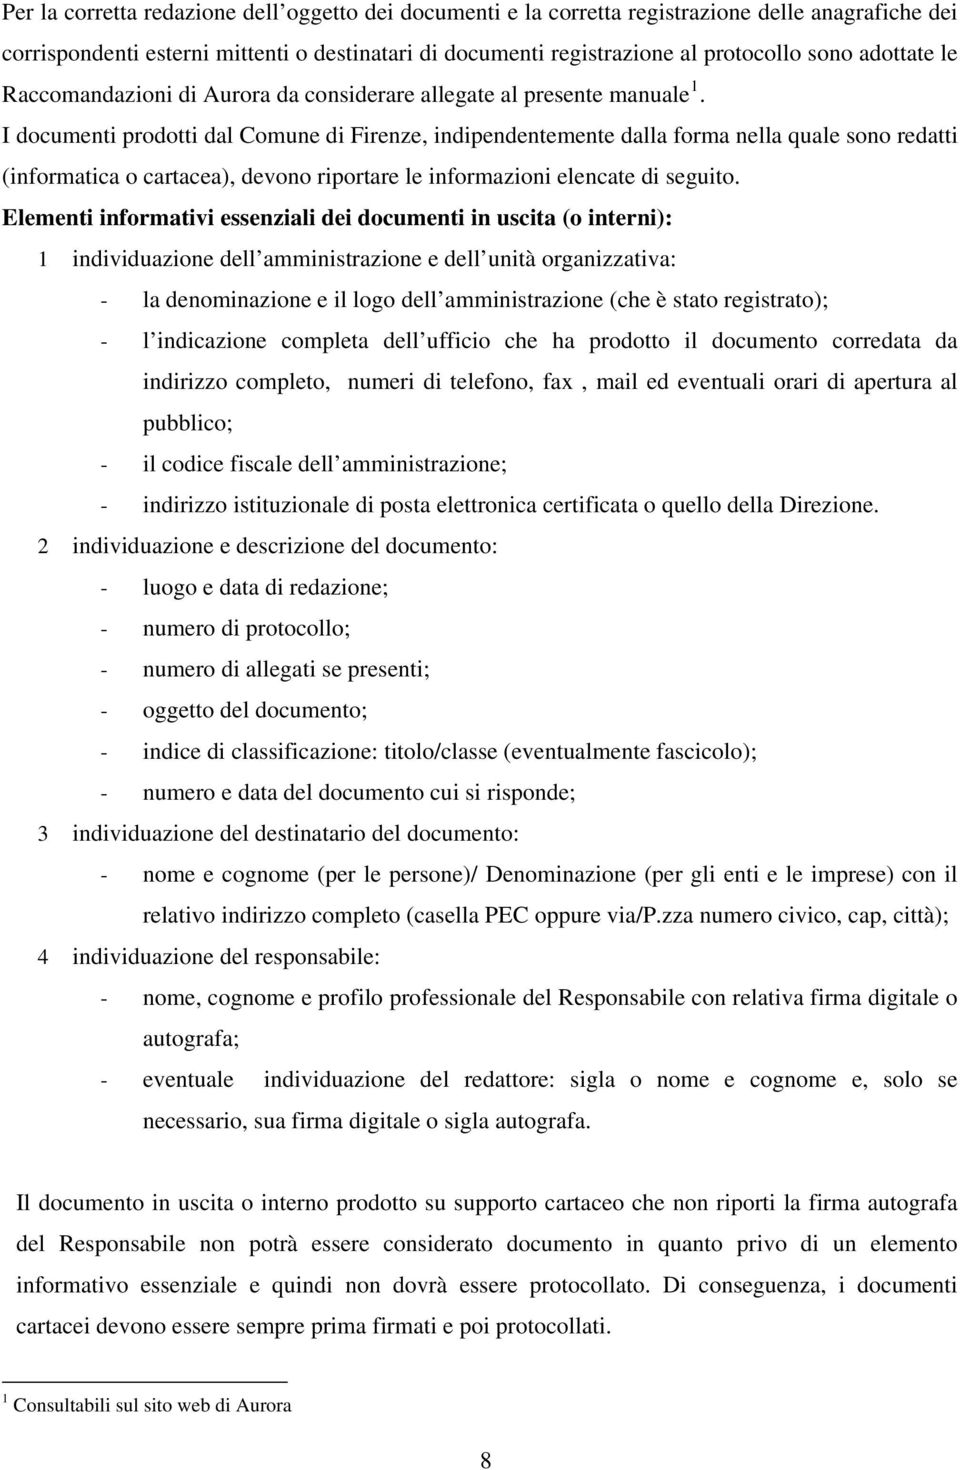 I documenti prodotti dal Comune di Firenze, indipendentemente dalla forma nella quale sono redatti (informatica o cartacea), devono riportare le informazioni elencate di seguito.